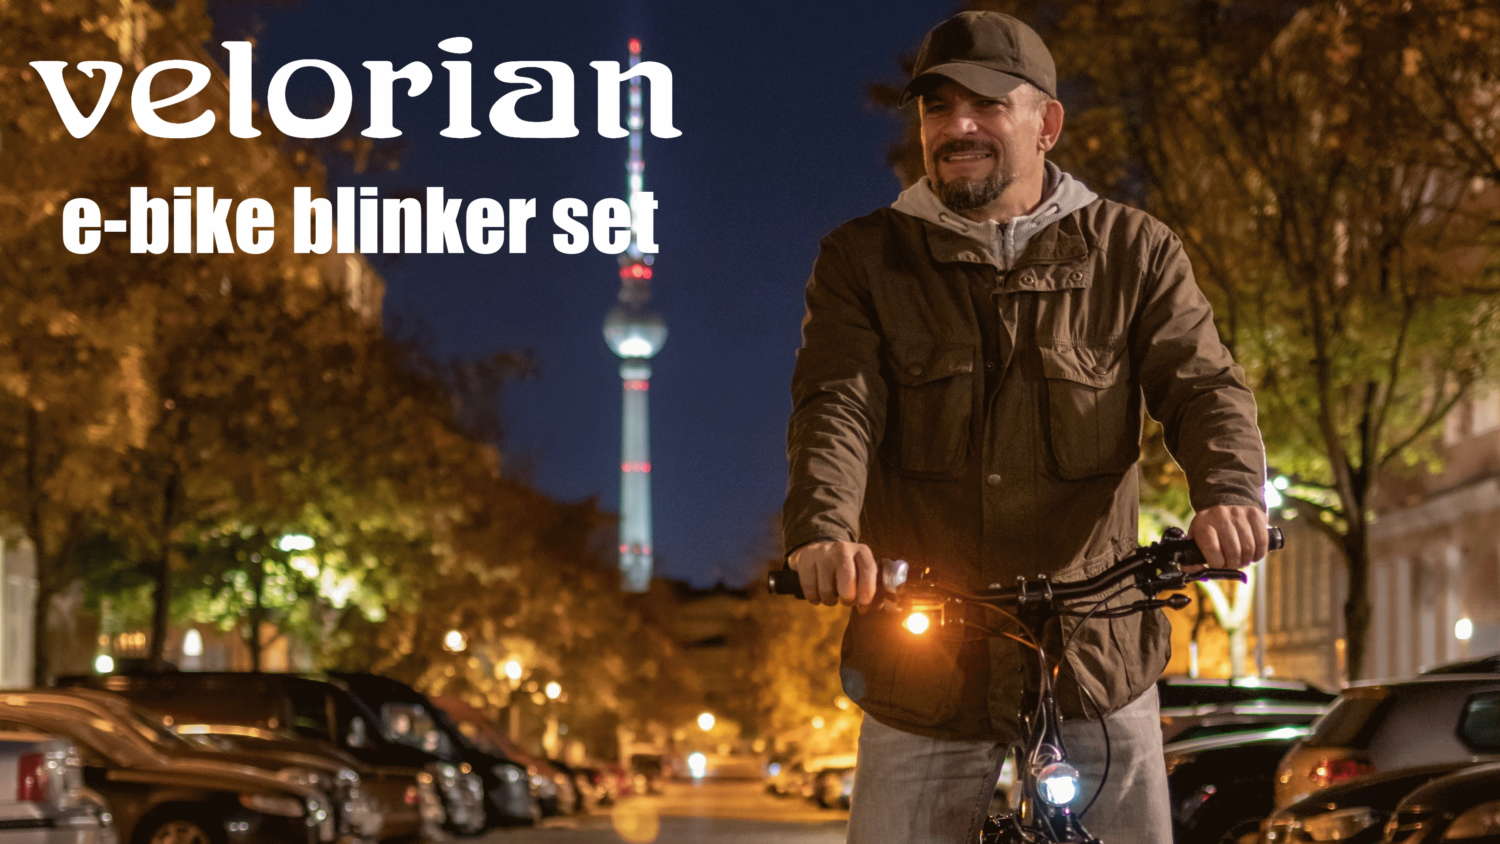 Velorian E-Bike Blinkerset nun auf Kickstarter verfügbar - Pedelecs und  E-Bikes